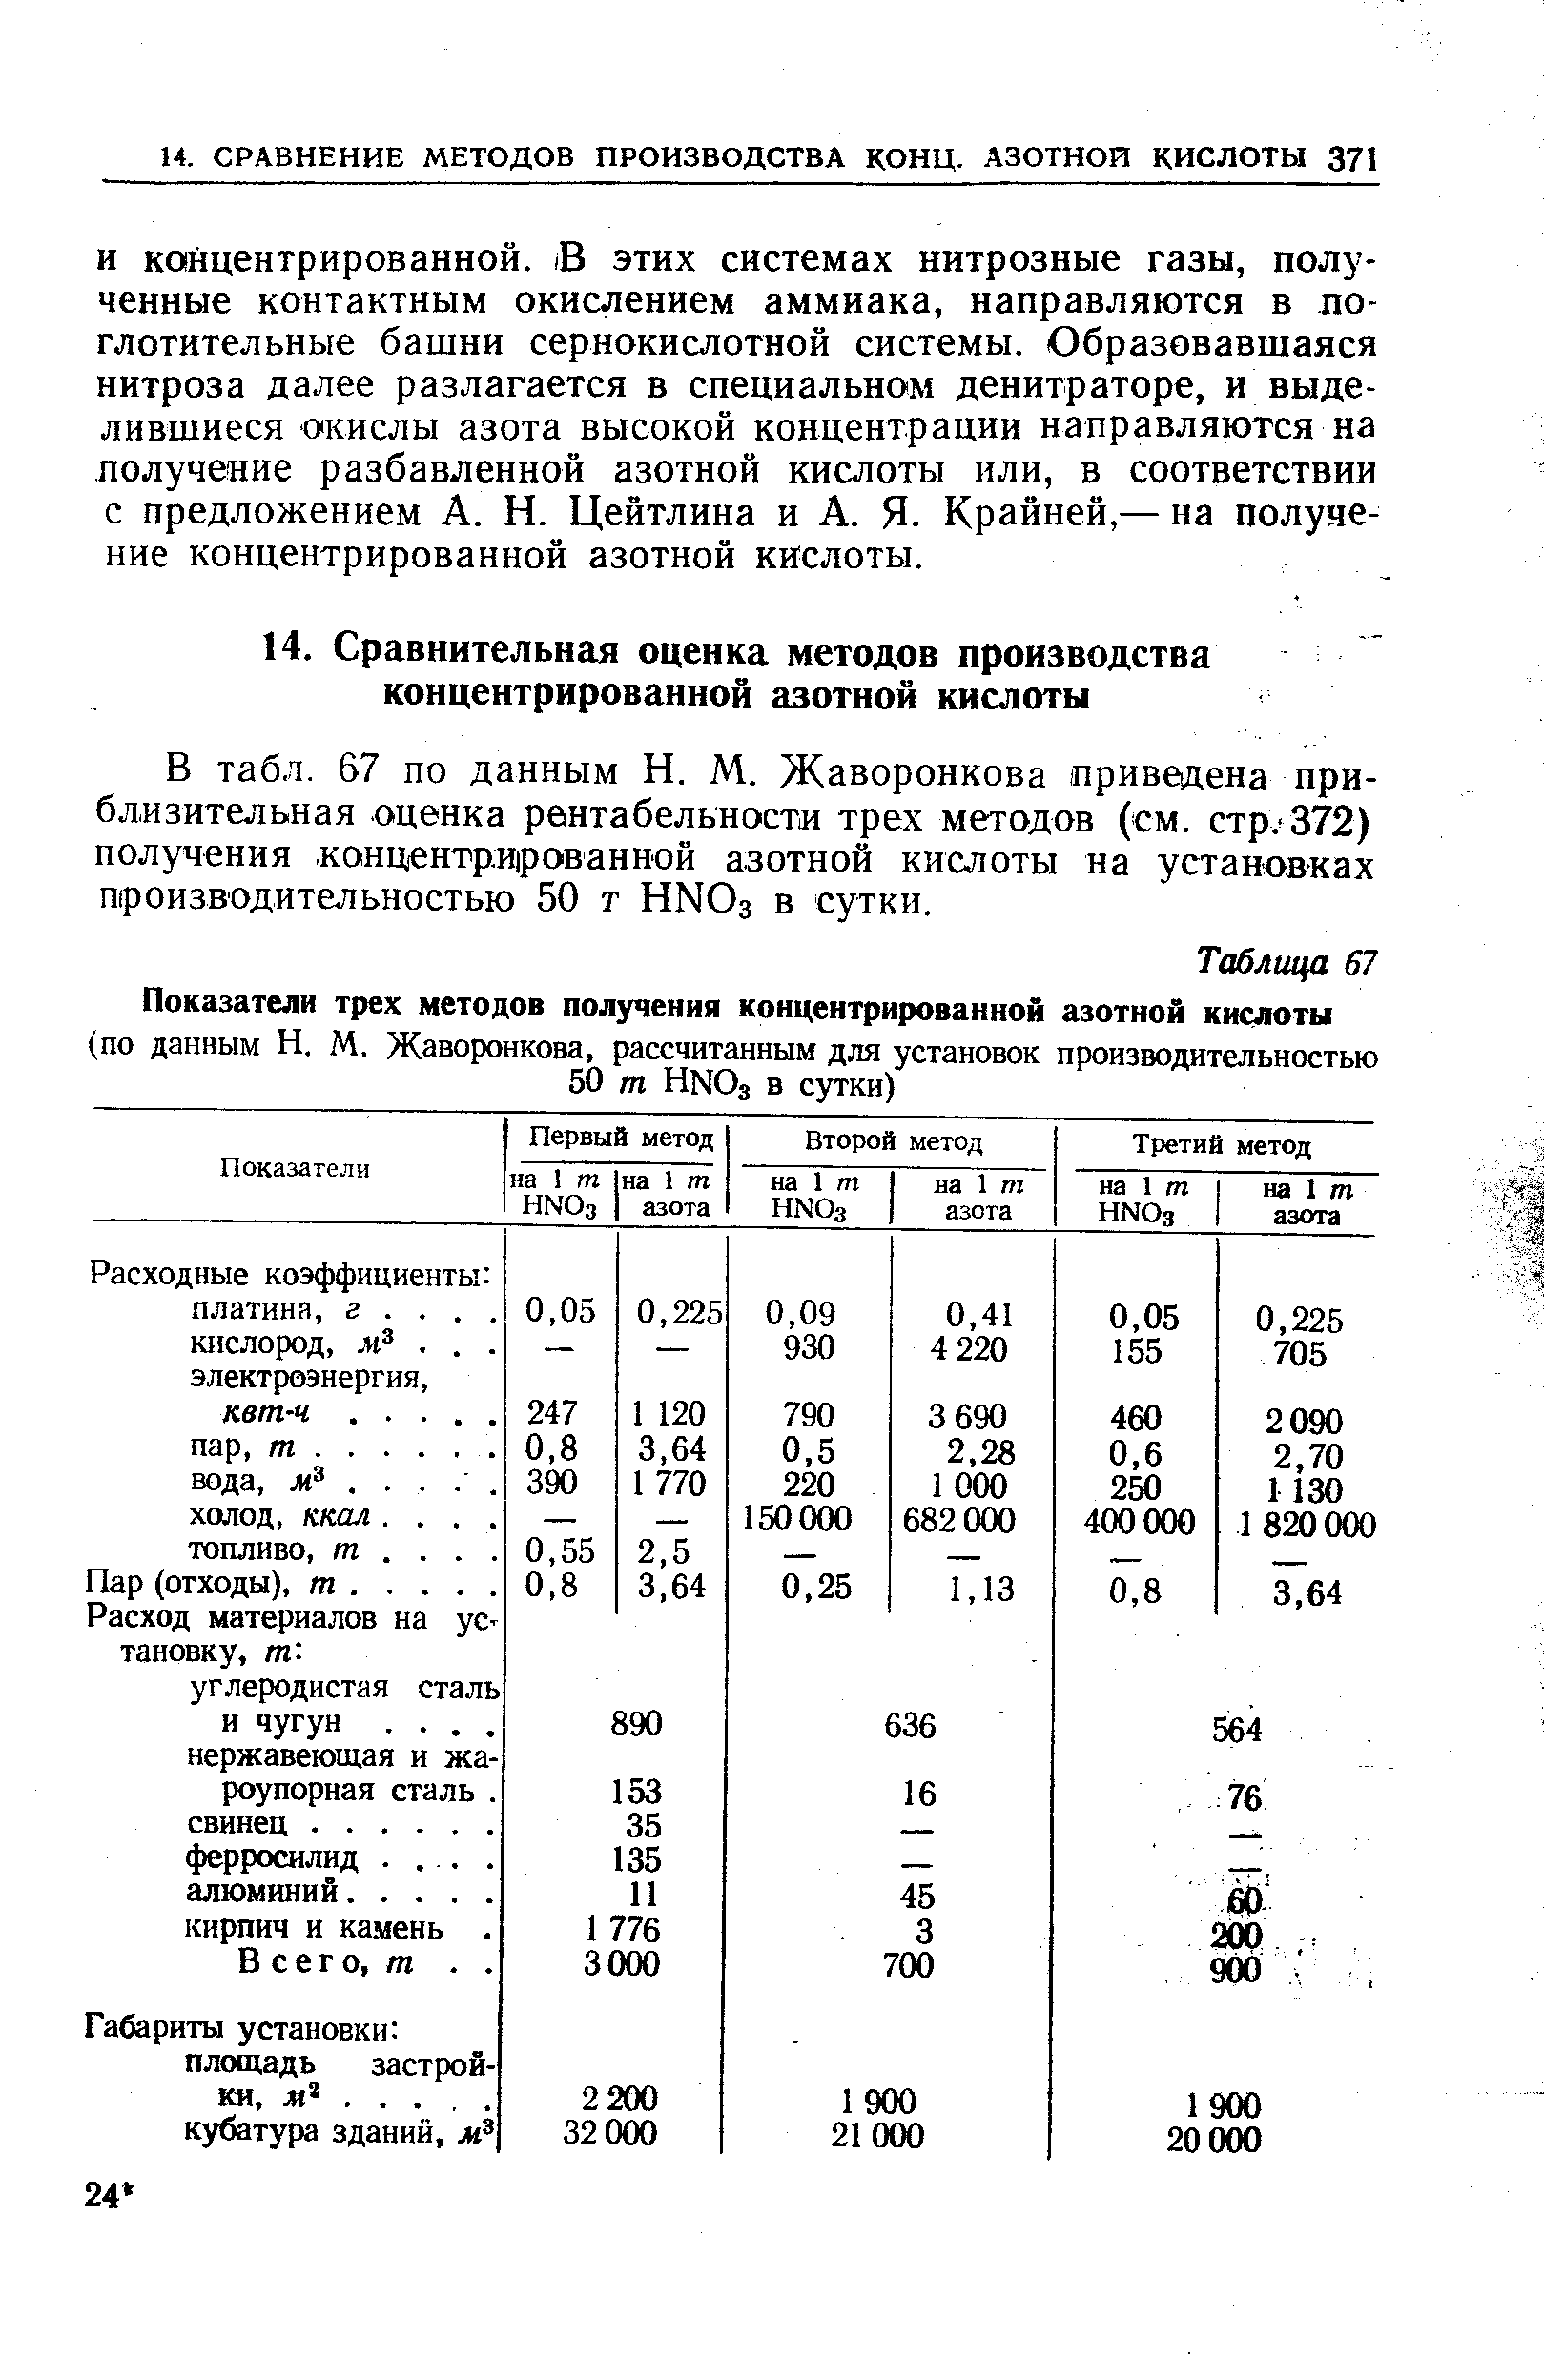 В табл. 67 по данным Н. М. Жаворонкова приведена приблизительная оценка рентабельности трех методов (см. стр.-372) получения концентрированной азотной кислоты на установках шроизводительностью 50 т НМОз в сутки.